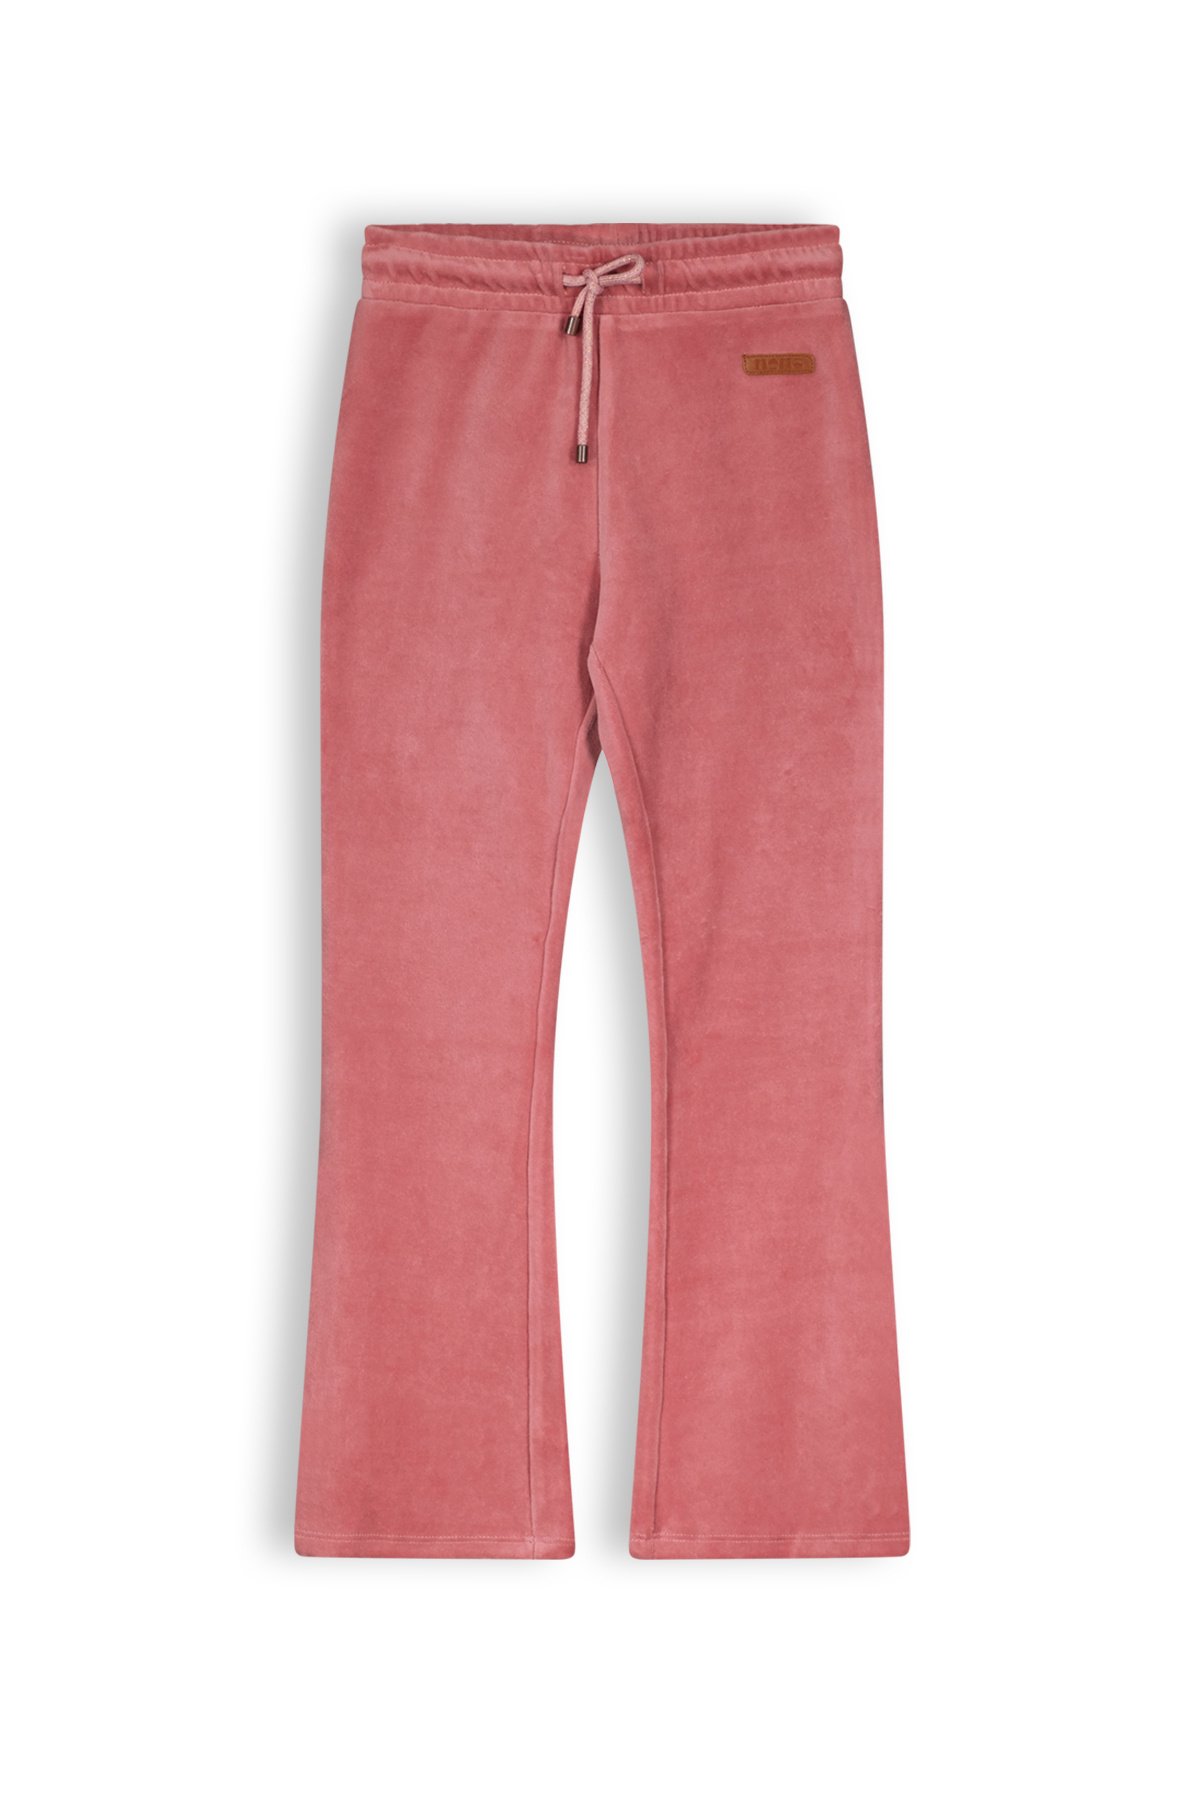 NONO - Lange broek - Sunset Pink - Maat 134-140